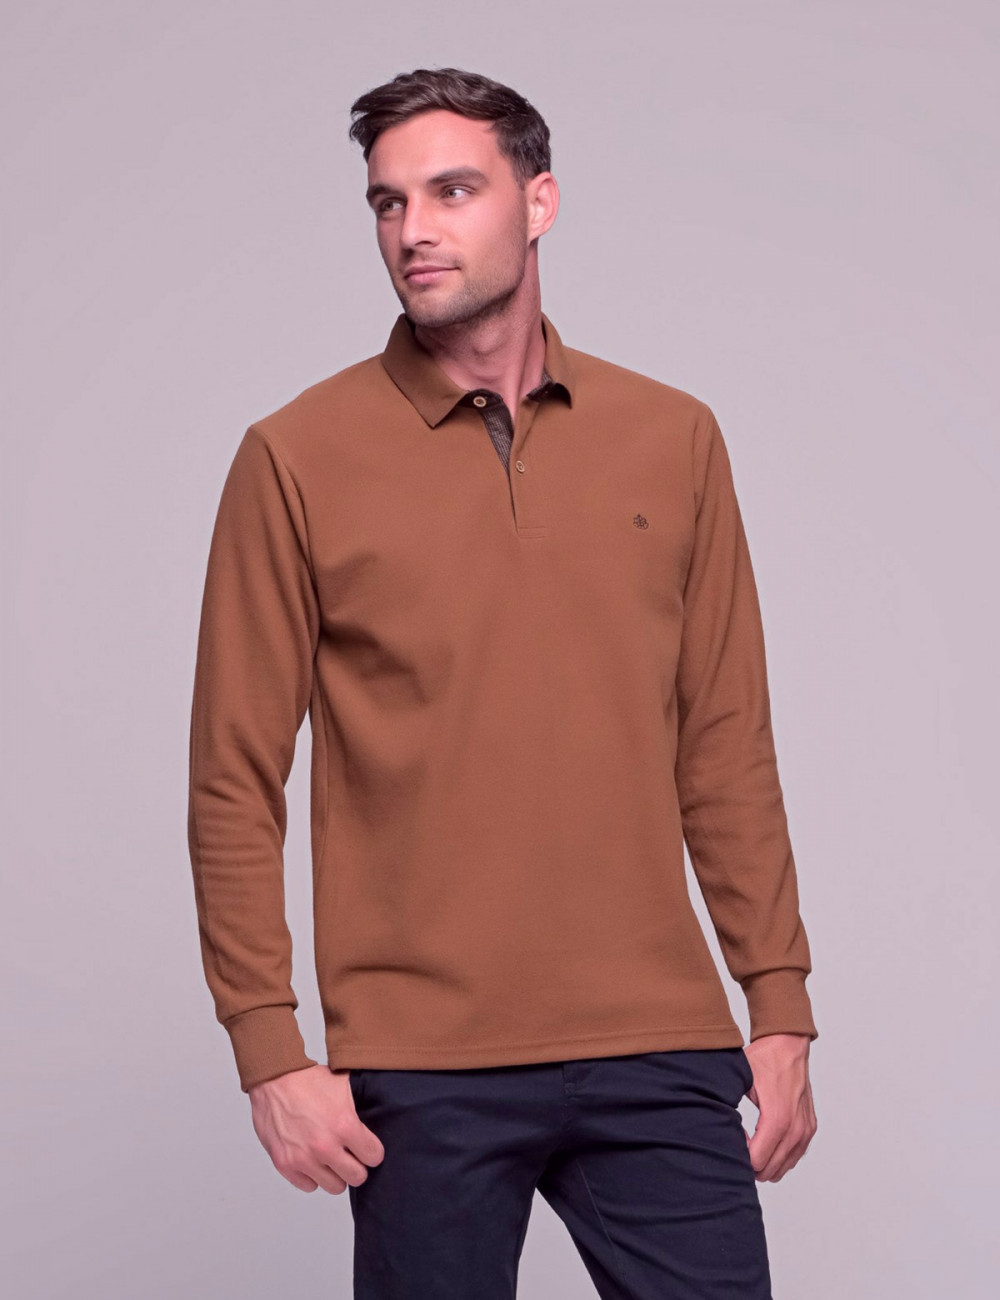 Everbest ανδρική Camel Polo πικέ μπλούζα plus size 2310220K